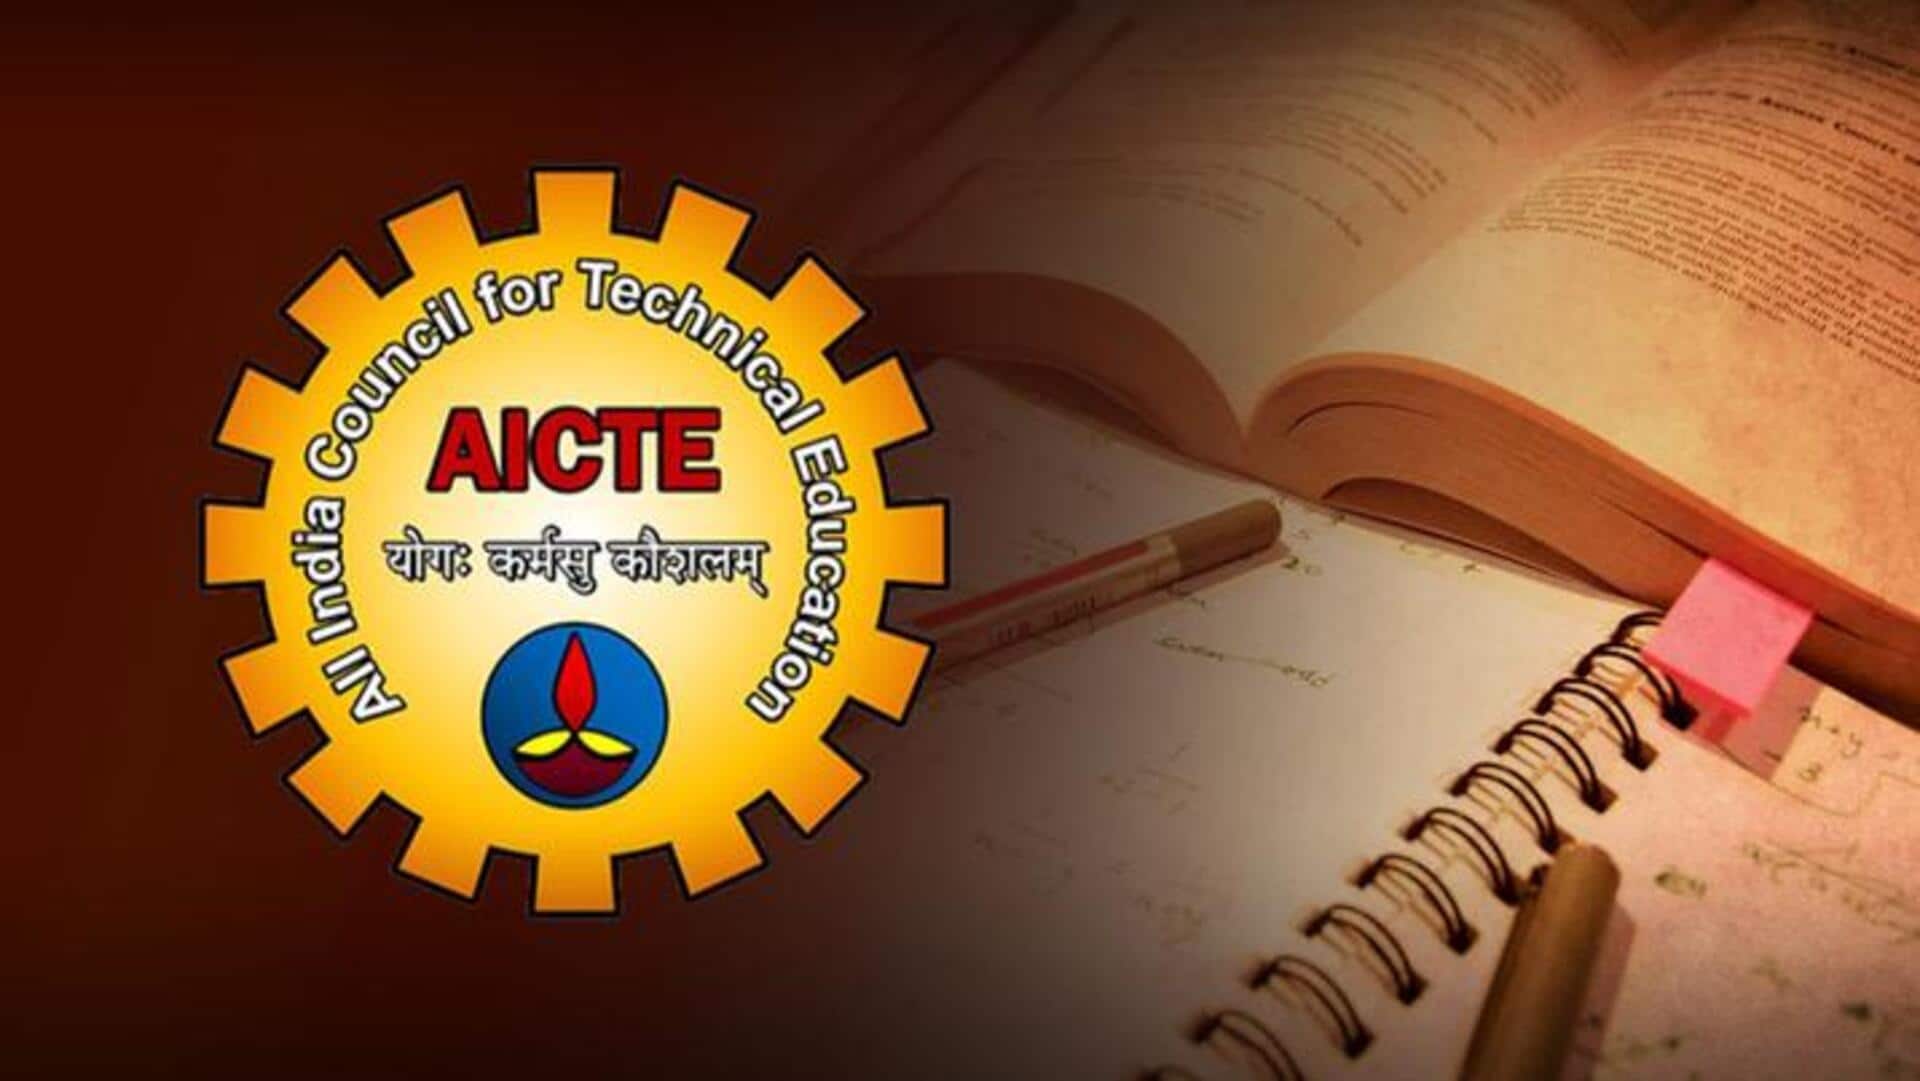 AICTE ने छात्रों के लिए शुरू की नई योजना, मिलेगी 1 लाख रुपये तक की सहायता